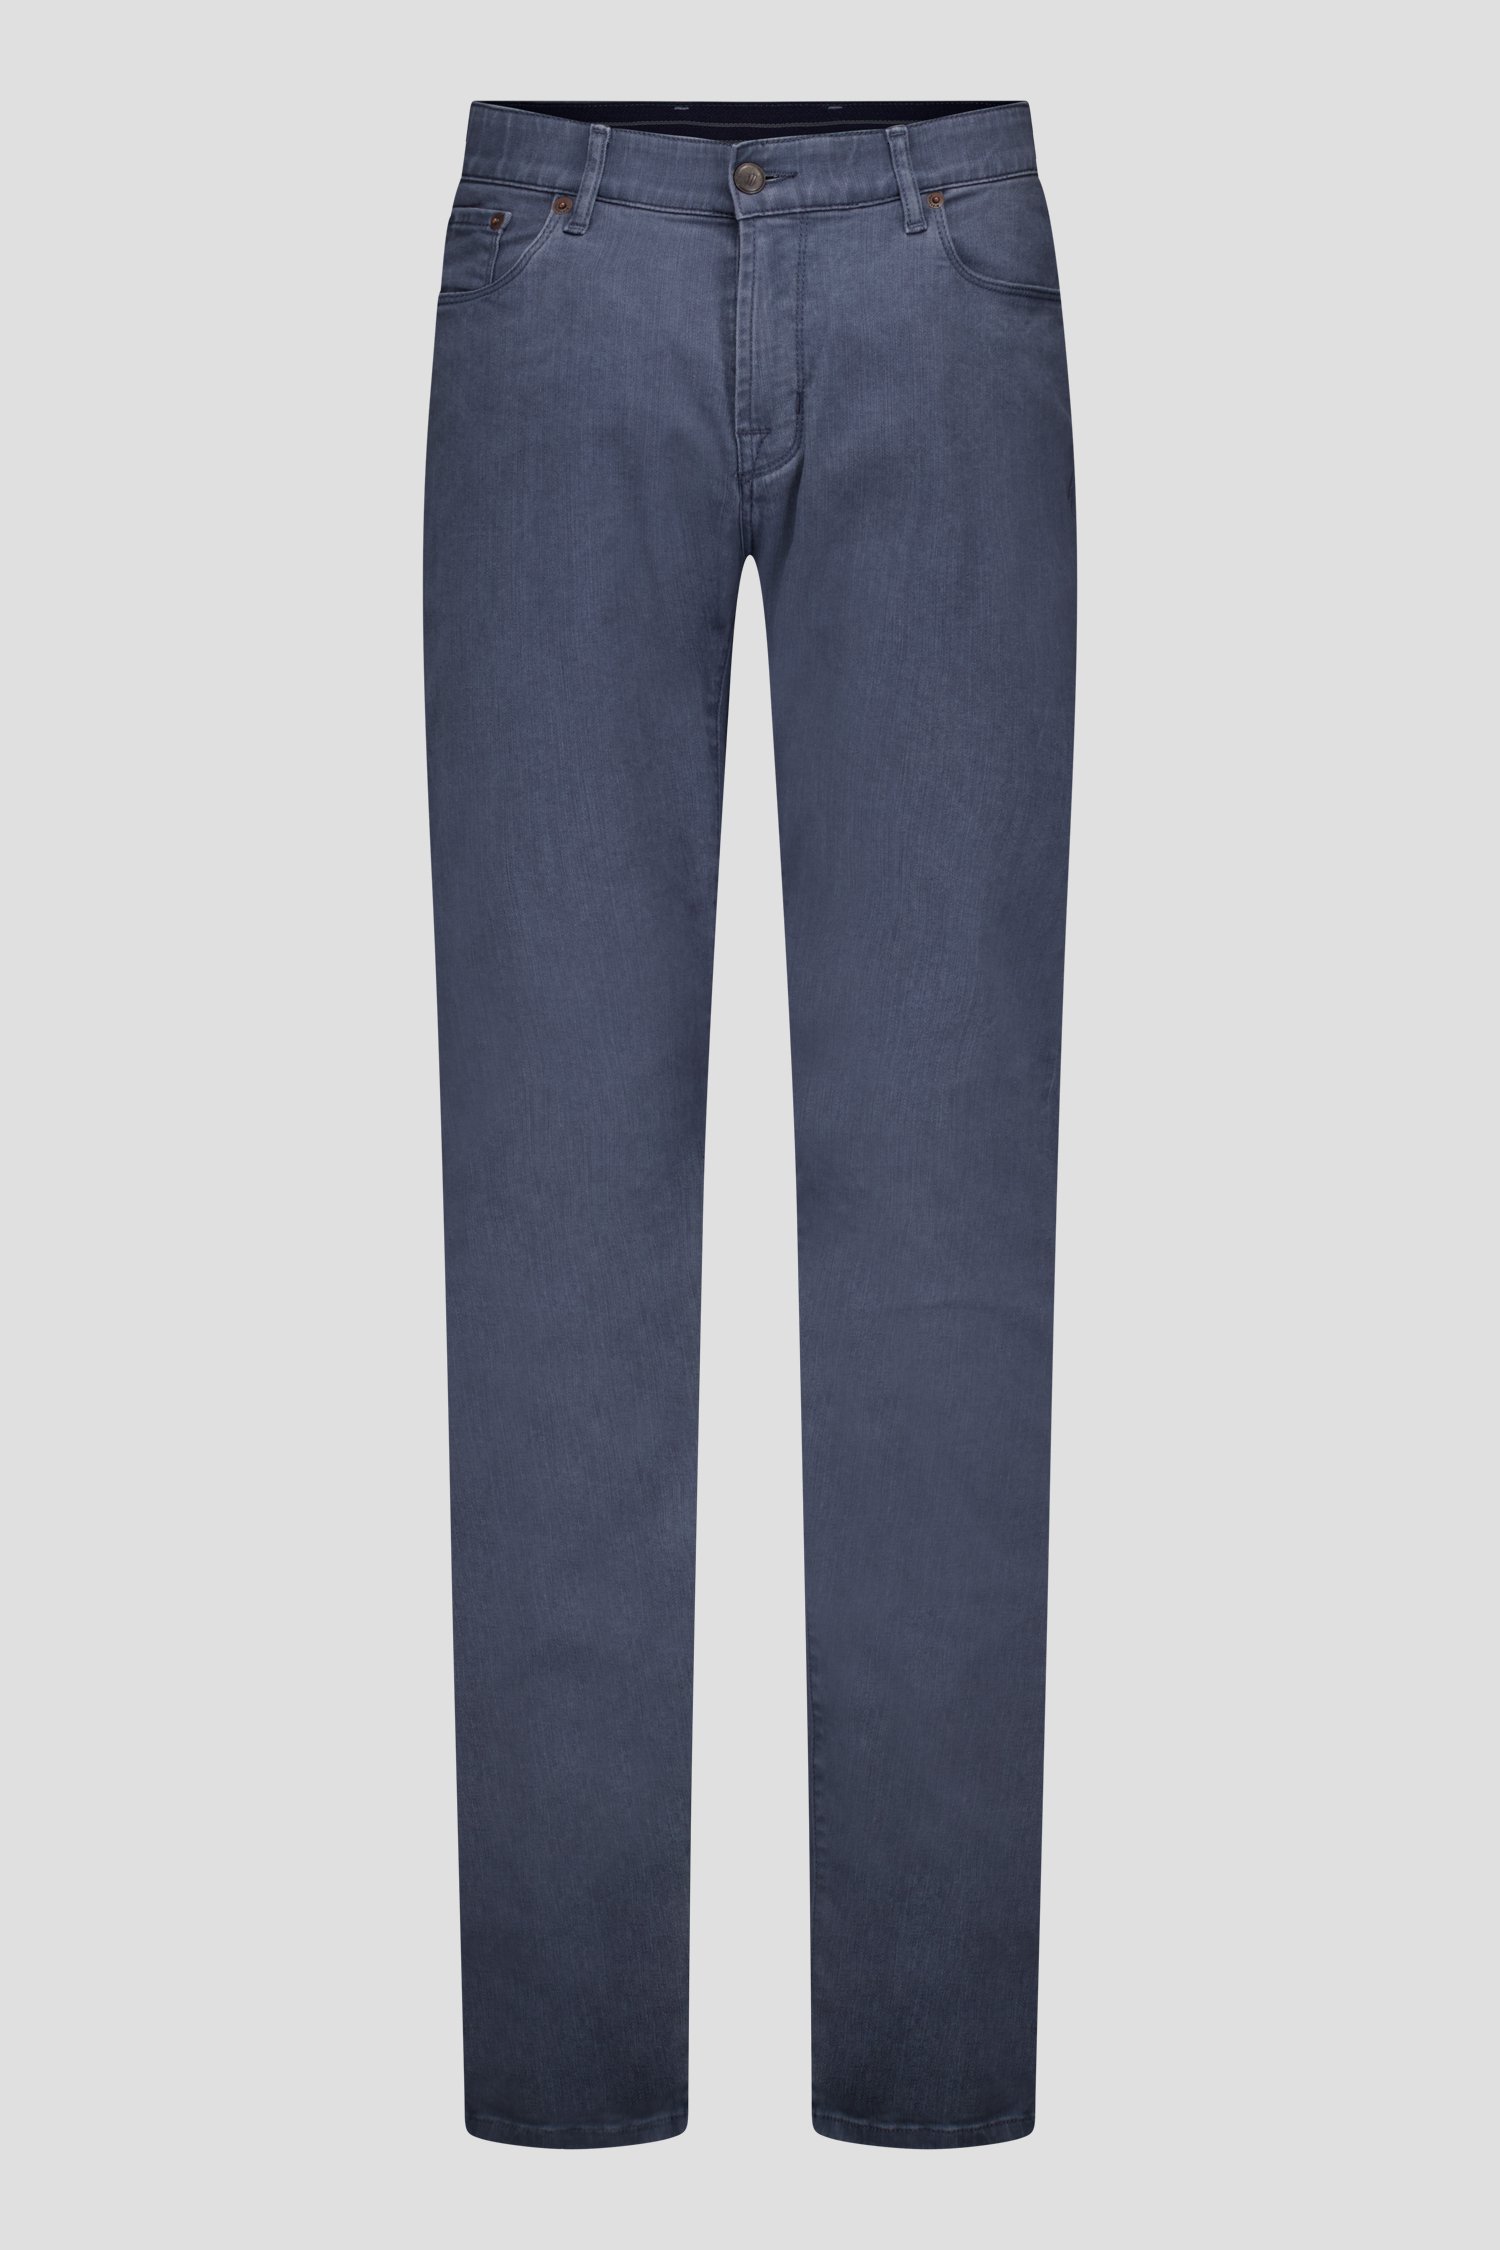 Pantalon gris-bleu - Jefferson - Regular fit de Brassville pour Hommes